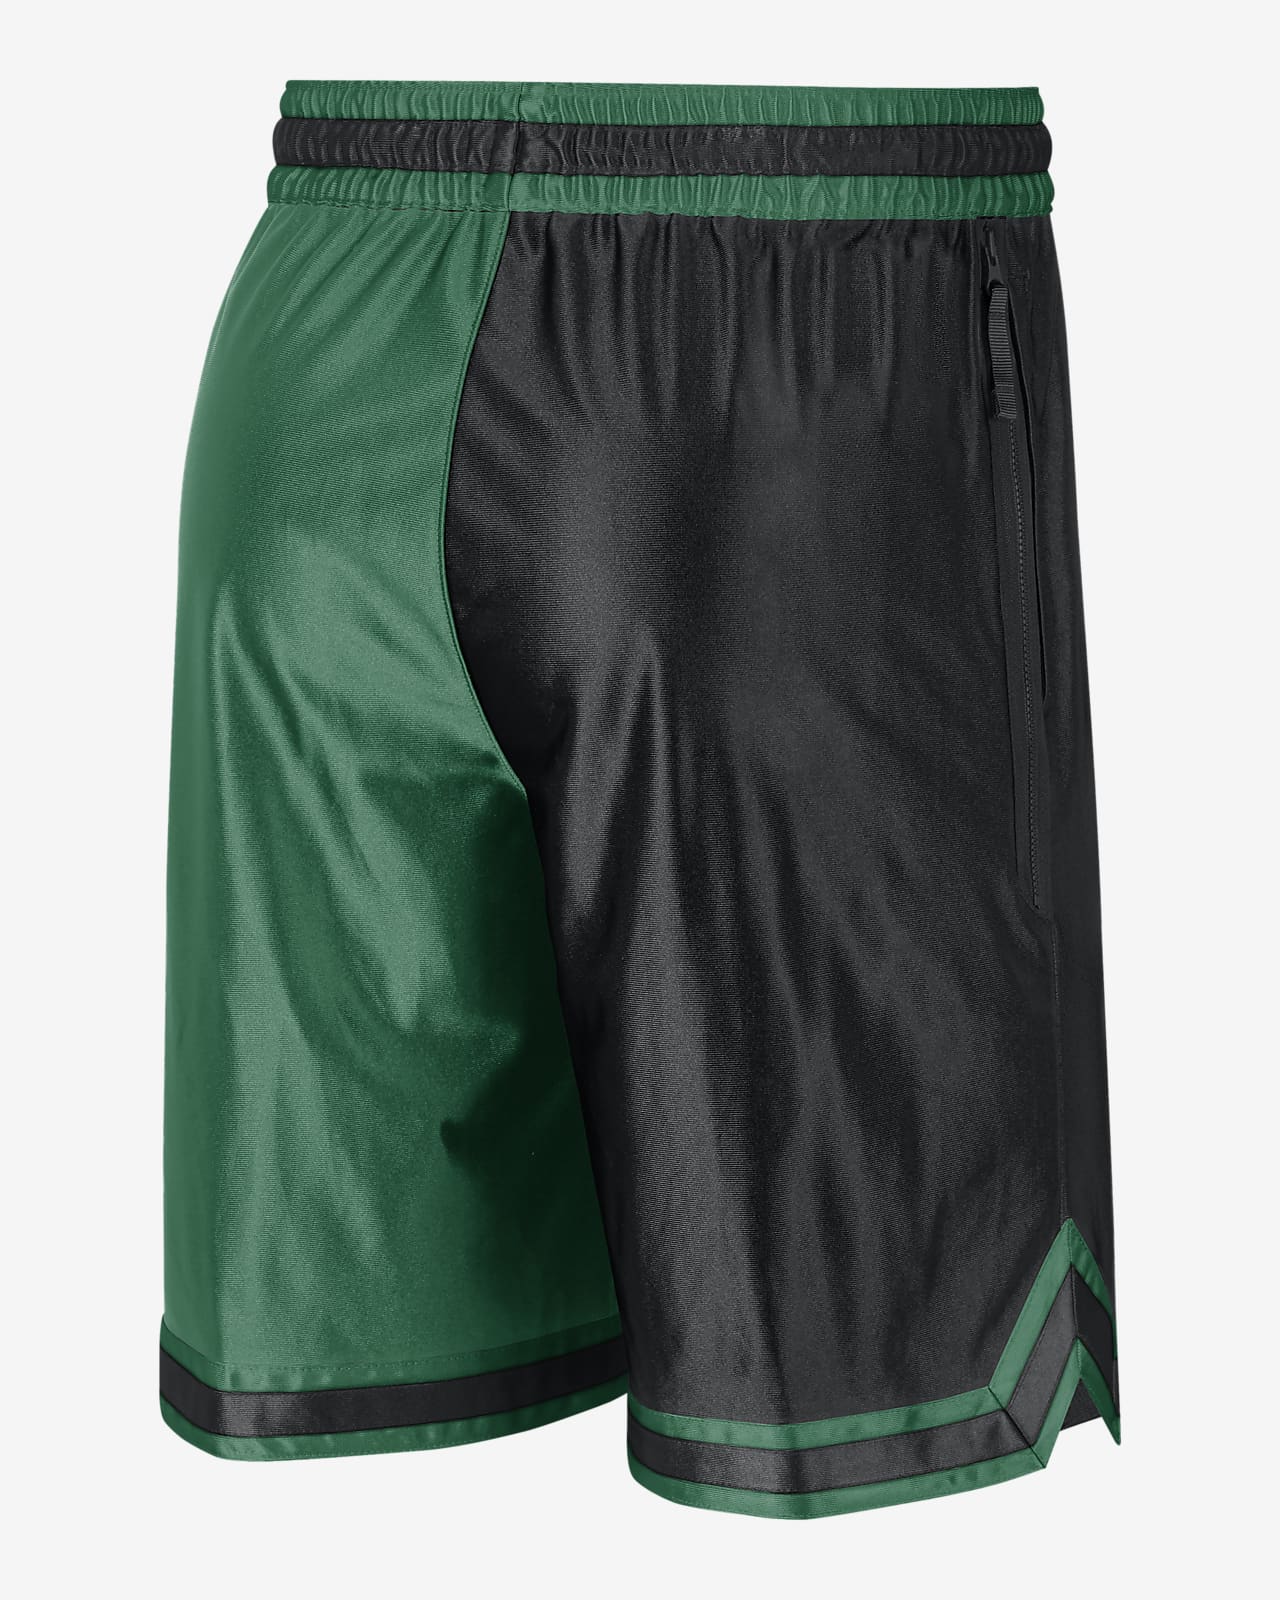 Boston Celtics Men's Dri-FIT NBA Graphic Nike.com